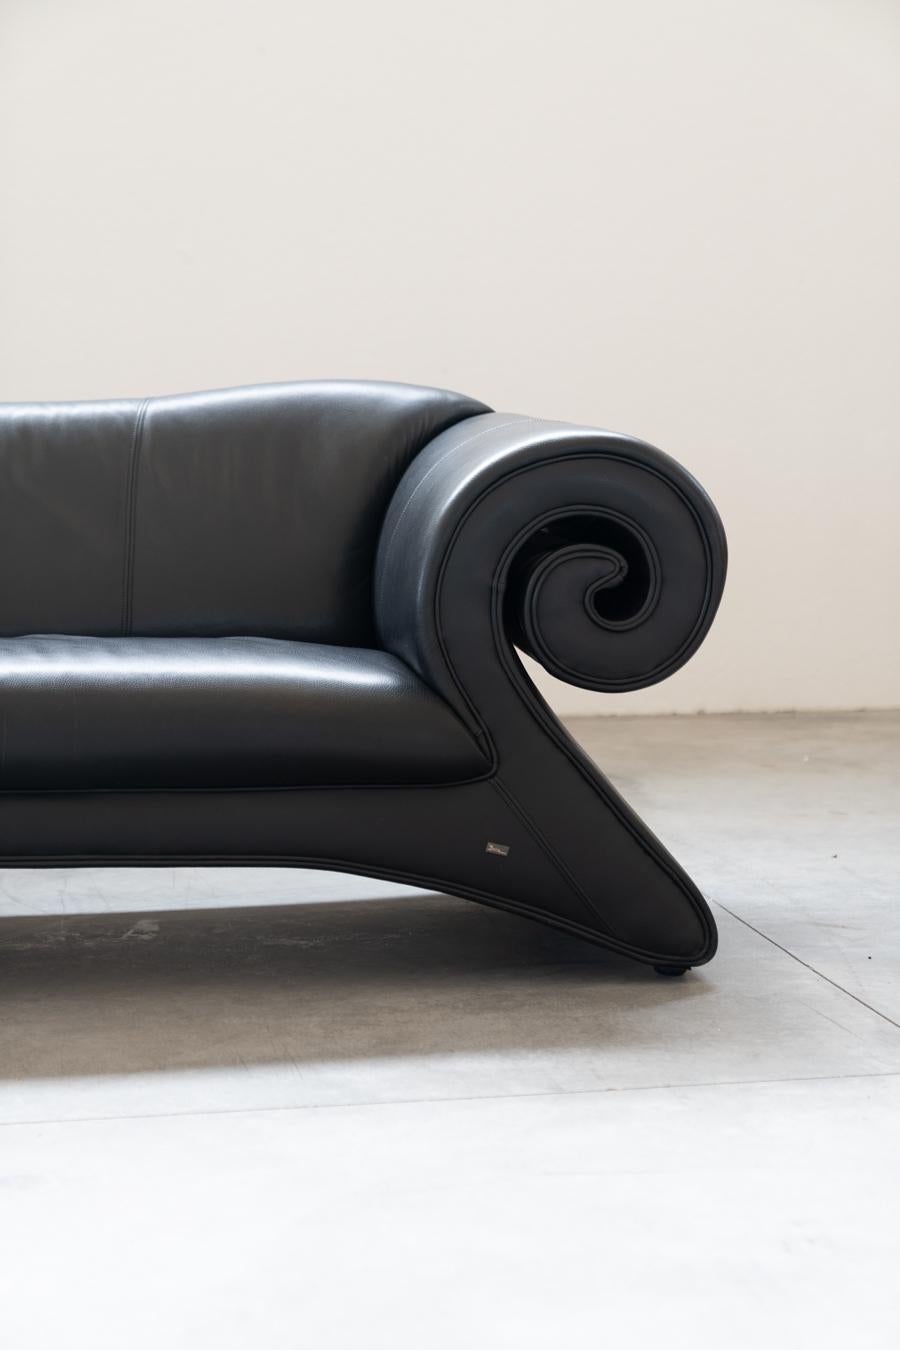 Divano GAUDI di Bretz
Splendida chaise-longue in pelle nera, progettata nel 1998 per la 	società tedesca Bretz
Difetti sulla pelle di un bracciolo, come da foto.
Stile
Modernista
Periodo del design
1990 - 1999
Periodo di produzione
1890 - 1919
Anno